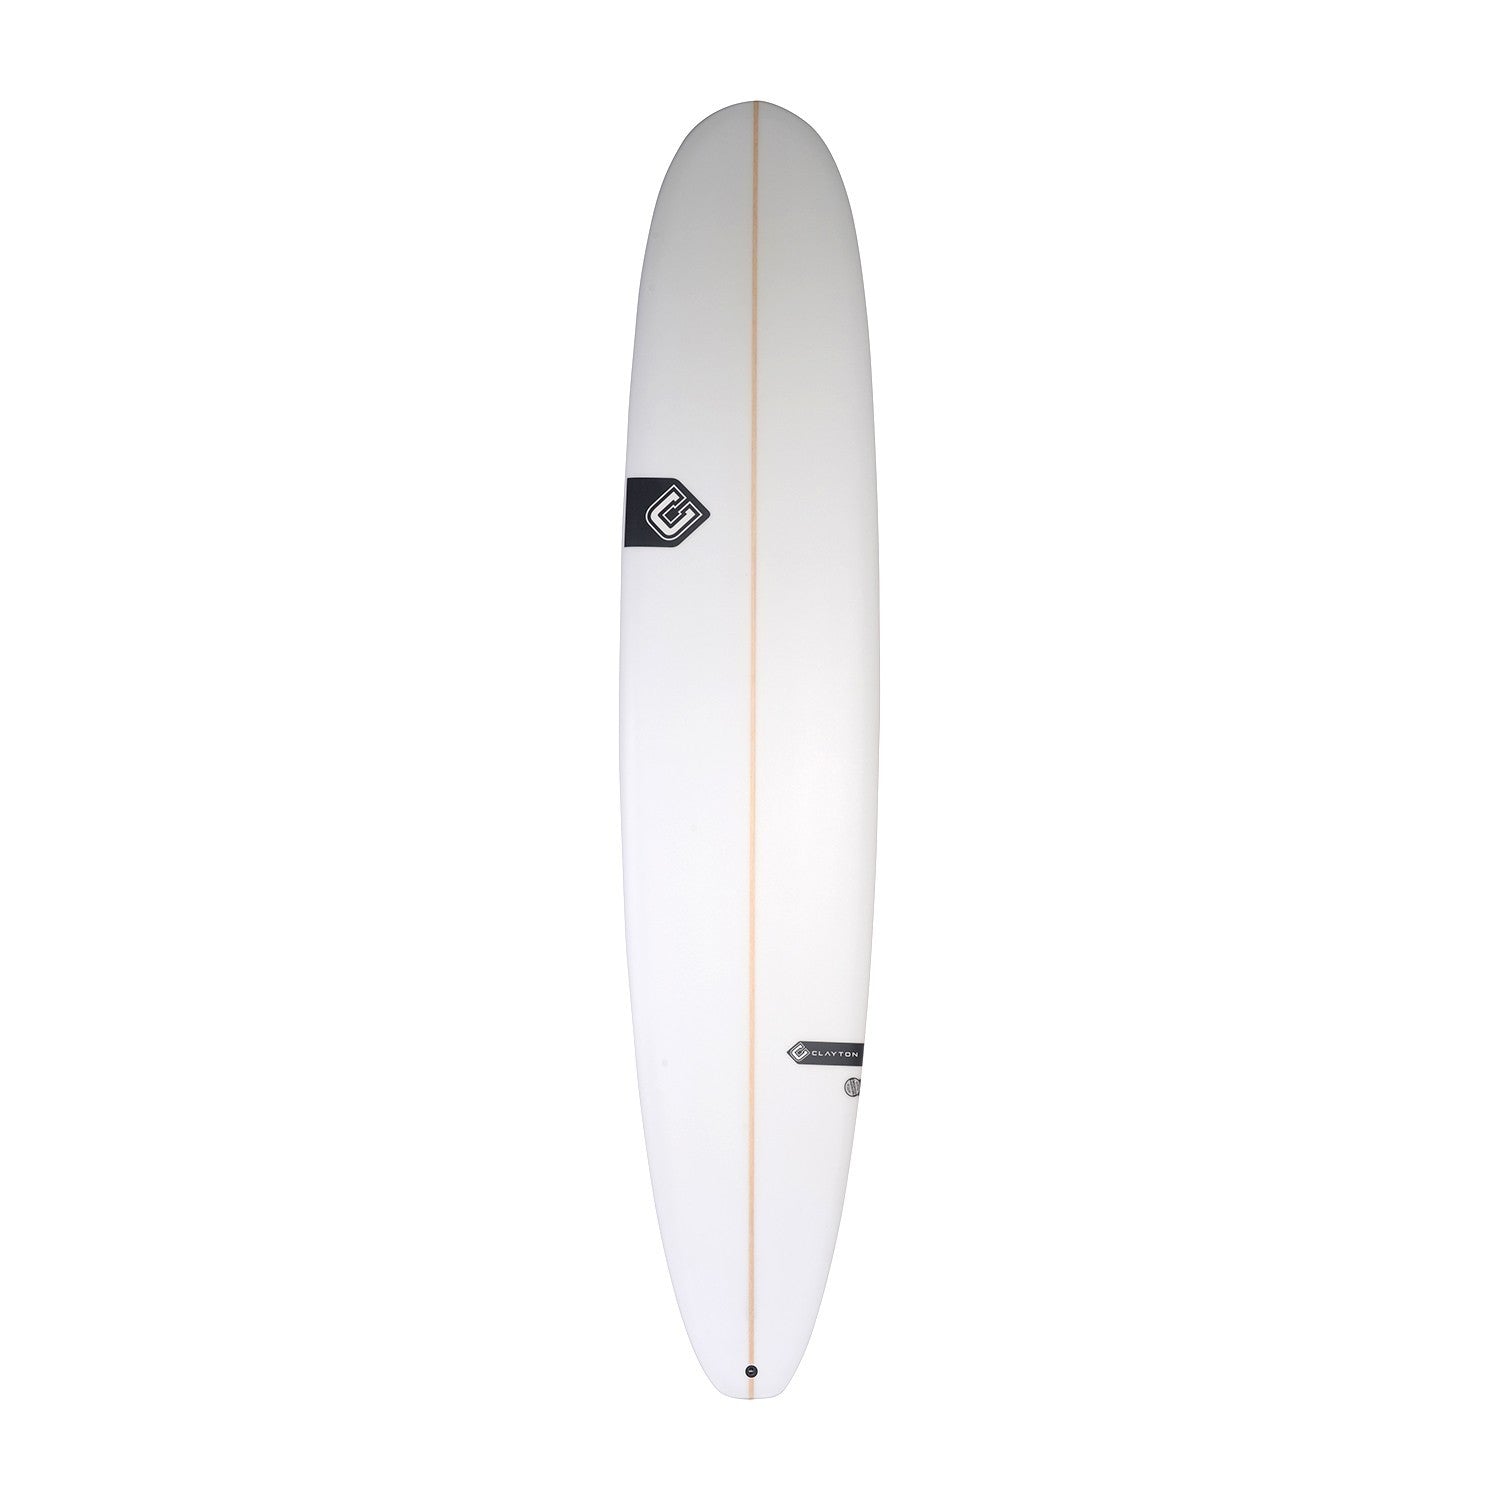 CLAYTON Surfboards Nose Rider (PU) - 9'0